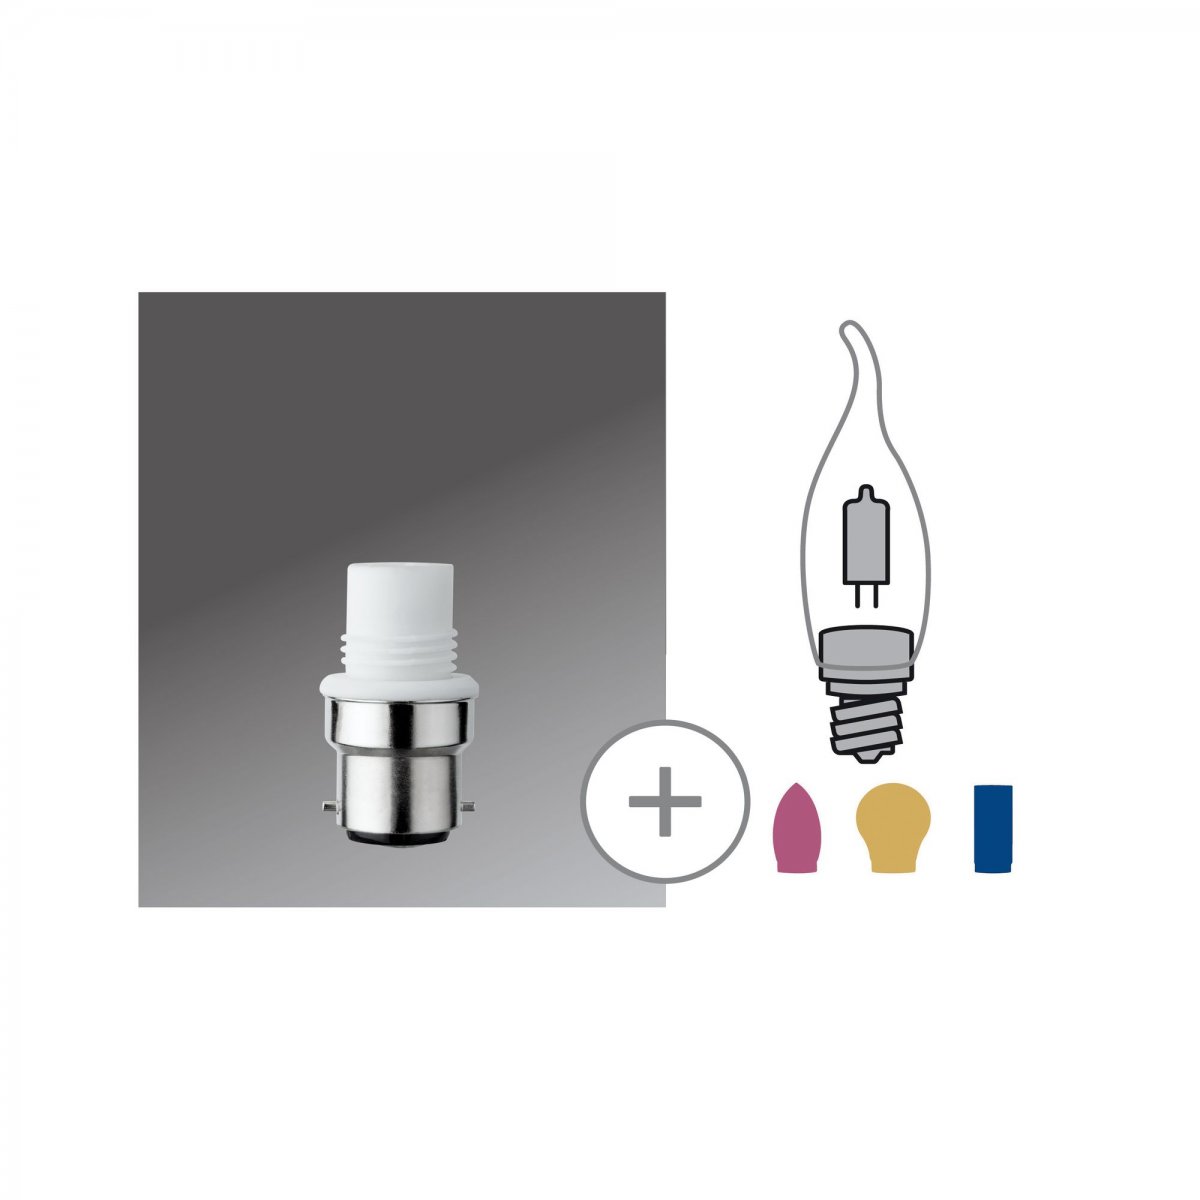 Paulmann No. 54927 Minihalogen Sockel für G9 Stiftsockel B22d 230V Weiß -->  Leuchten & Lampen online kaufen im Shop ligh